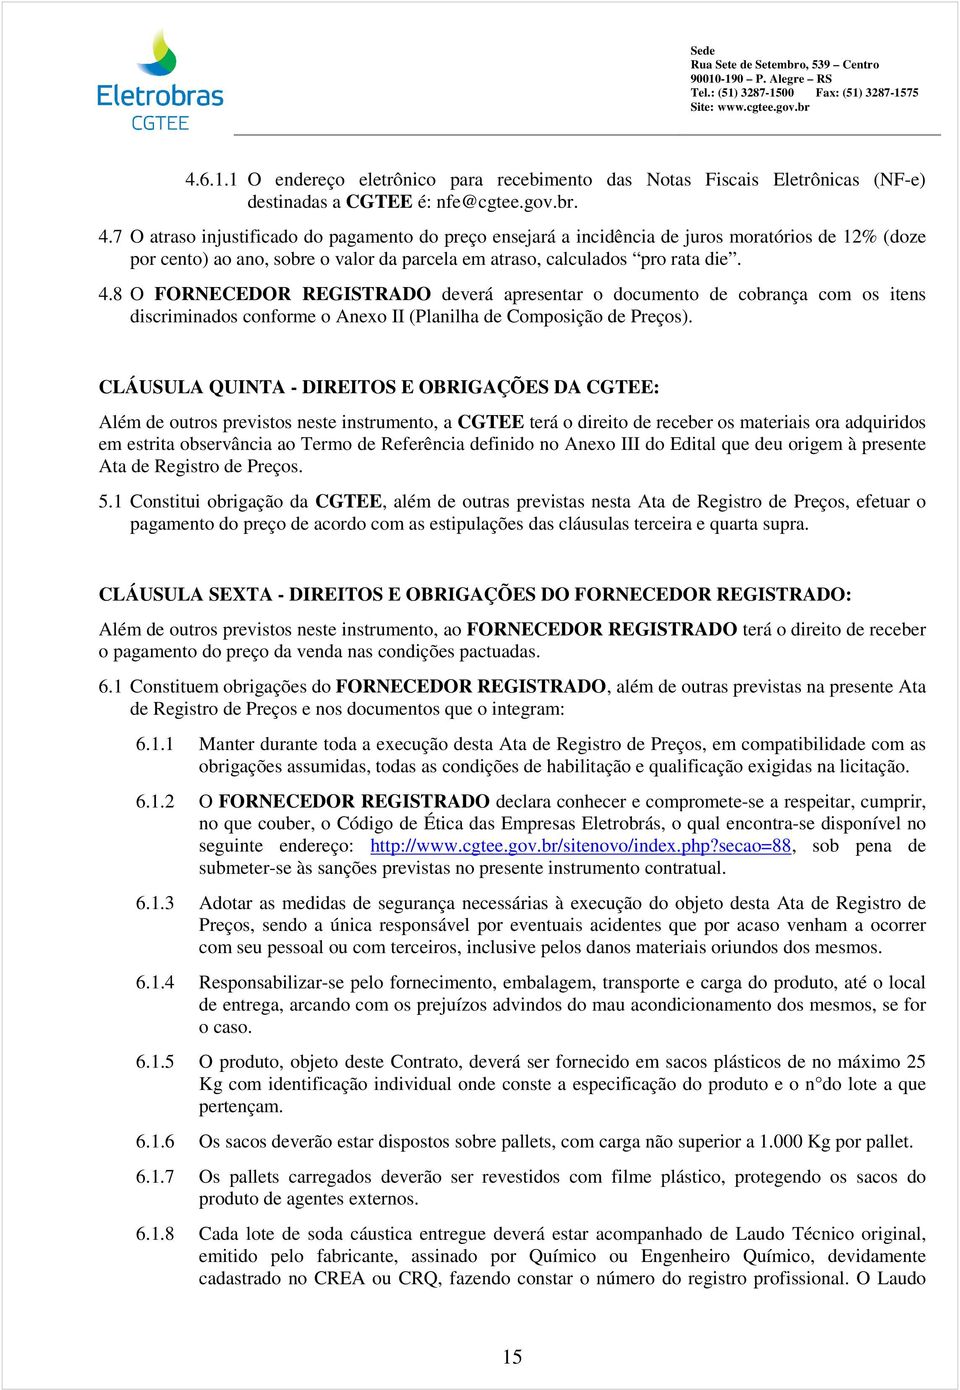 8 O FORNECEDOR REGISTRADO deverá apresentar o documento de cobrança com os itens discriminados conforme o Anexo II (Planilha de Composição de Preços).